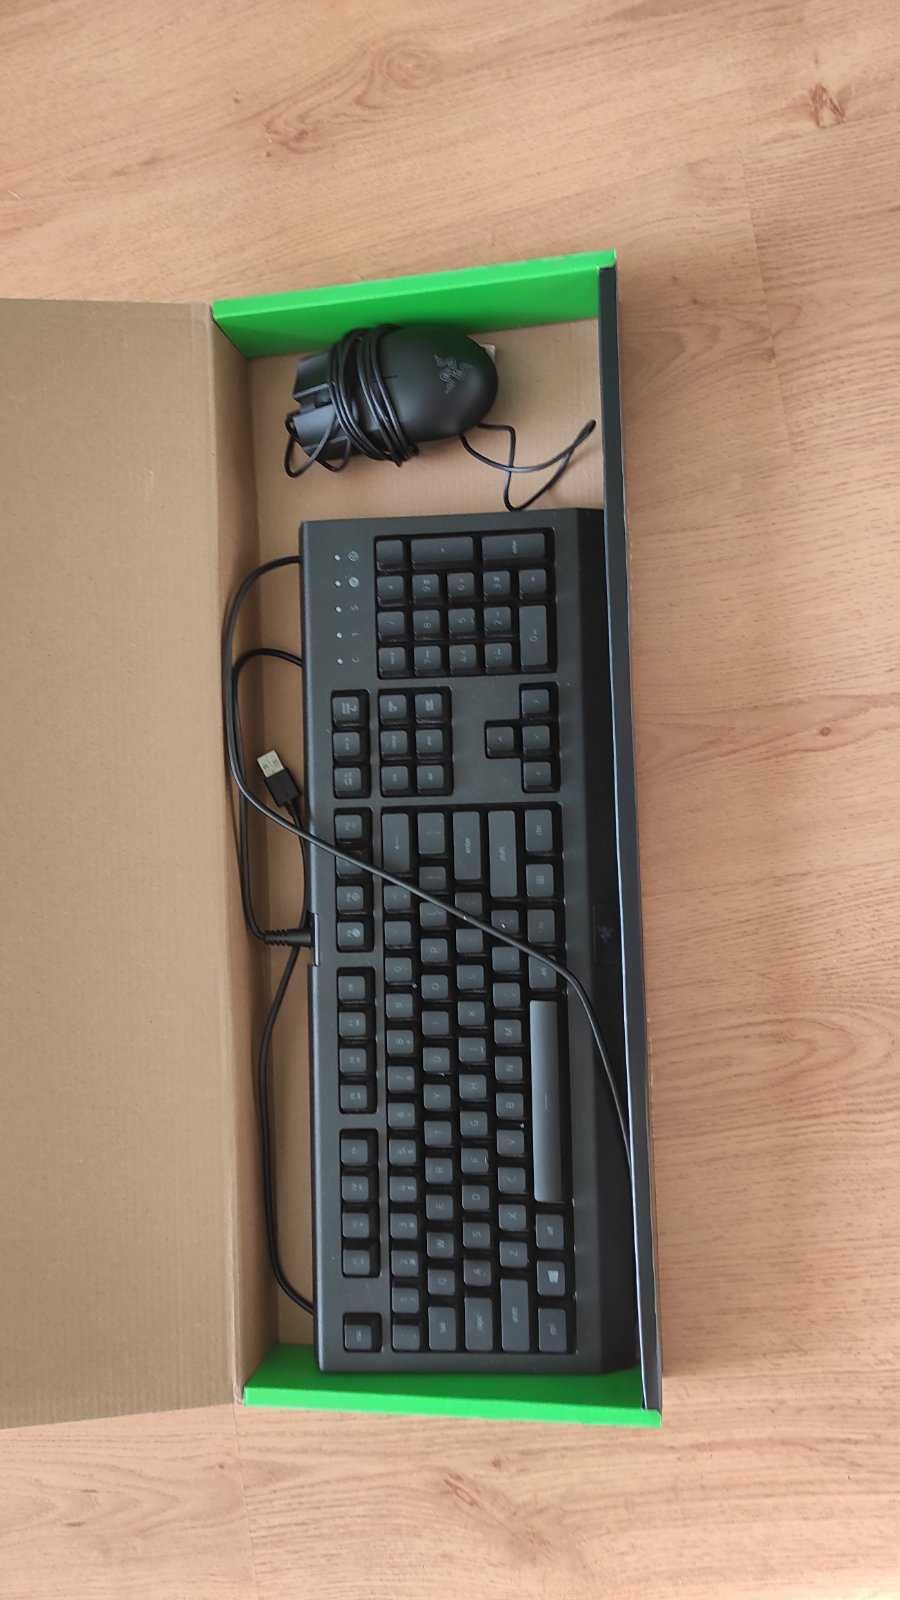 Комплеkт мишка и кавиатура за компютър Razer